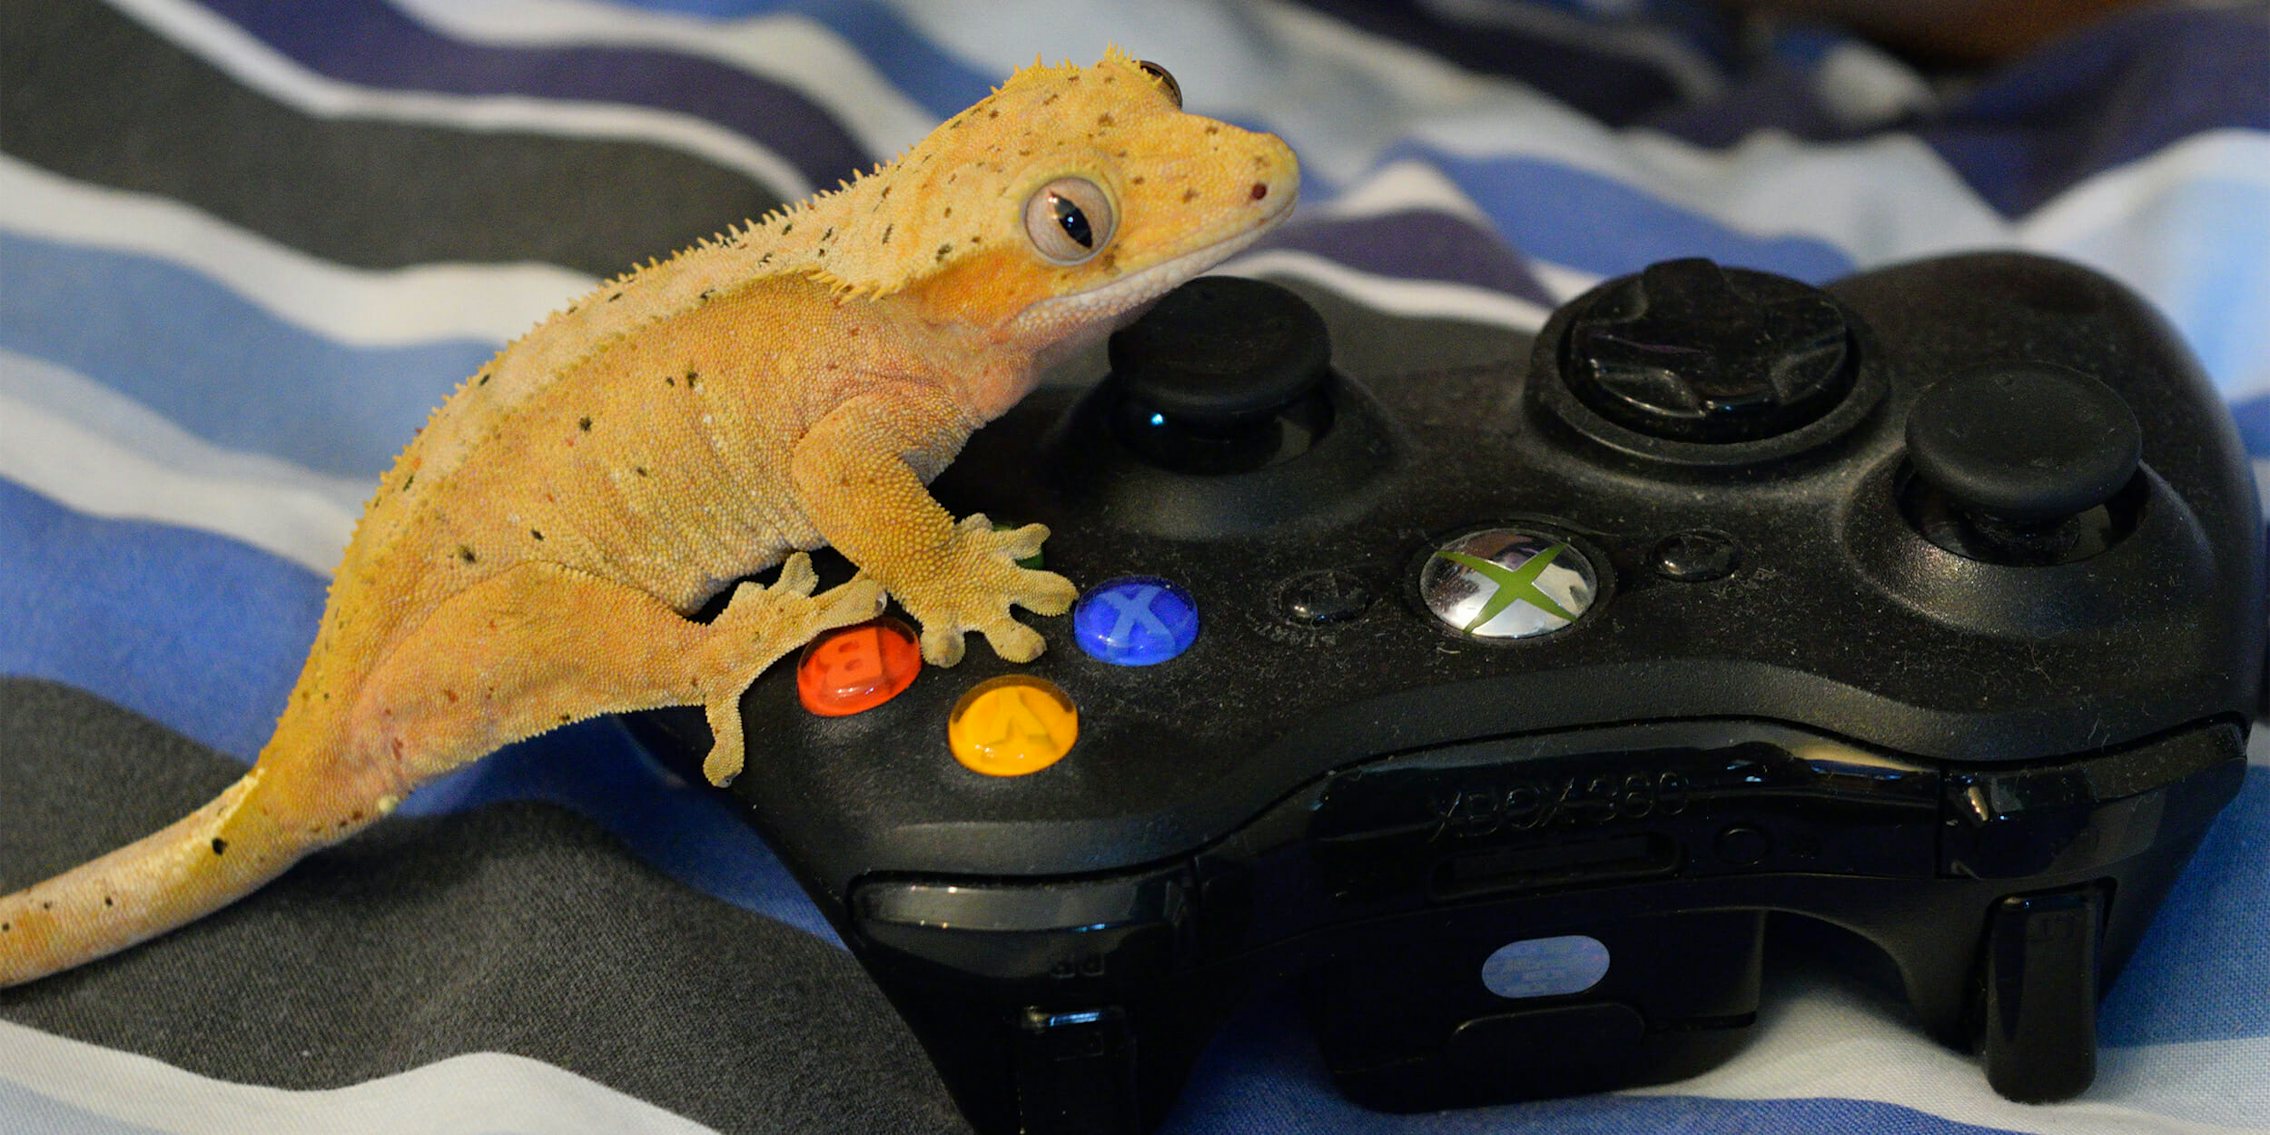 Gecko on Xbox controller